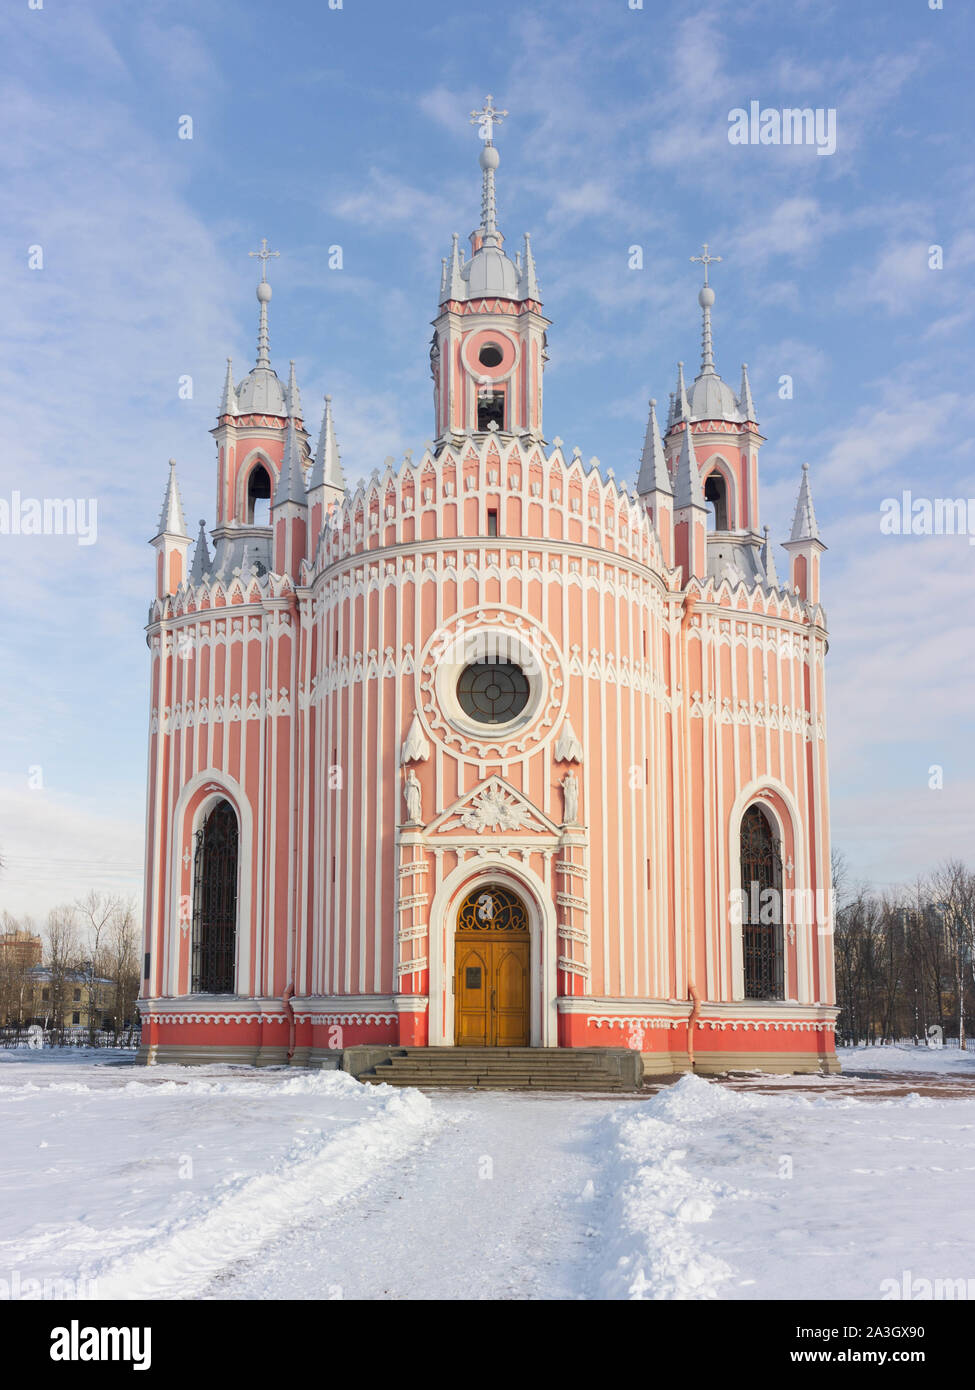 La Iglesia de San Juan Bautista, conocido más comúnmente como iglesia, cerca Chesme Moskovskaya en un día de invierno en San Petersburgo, Rusia Foto de stock